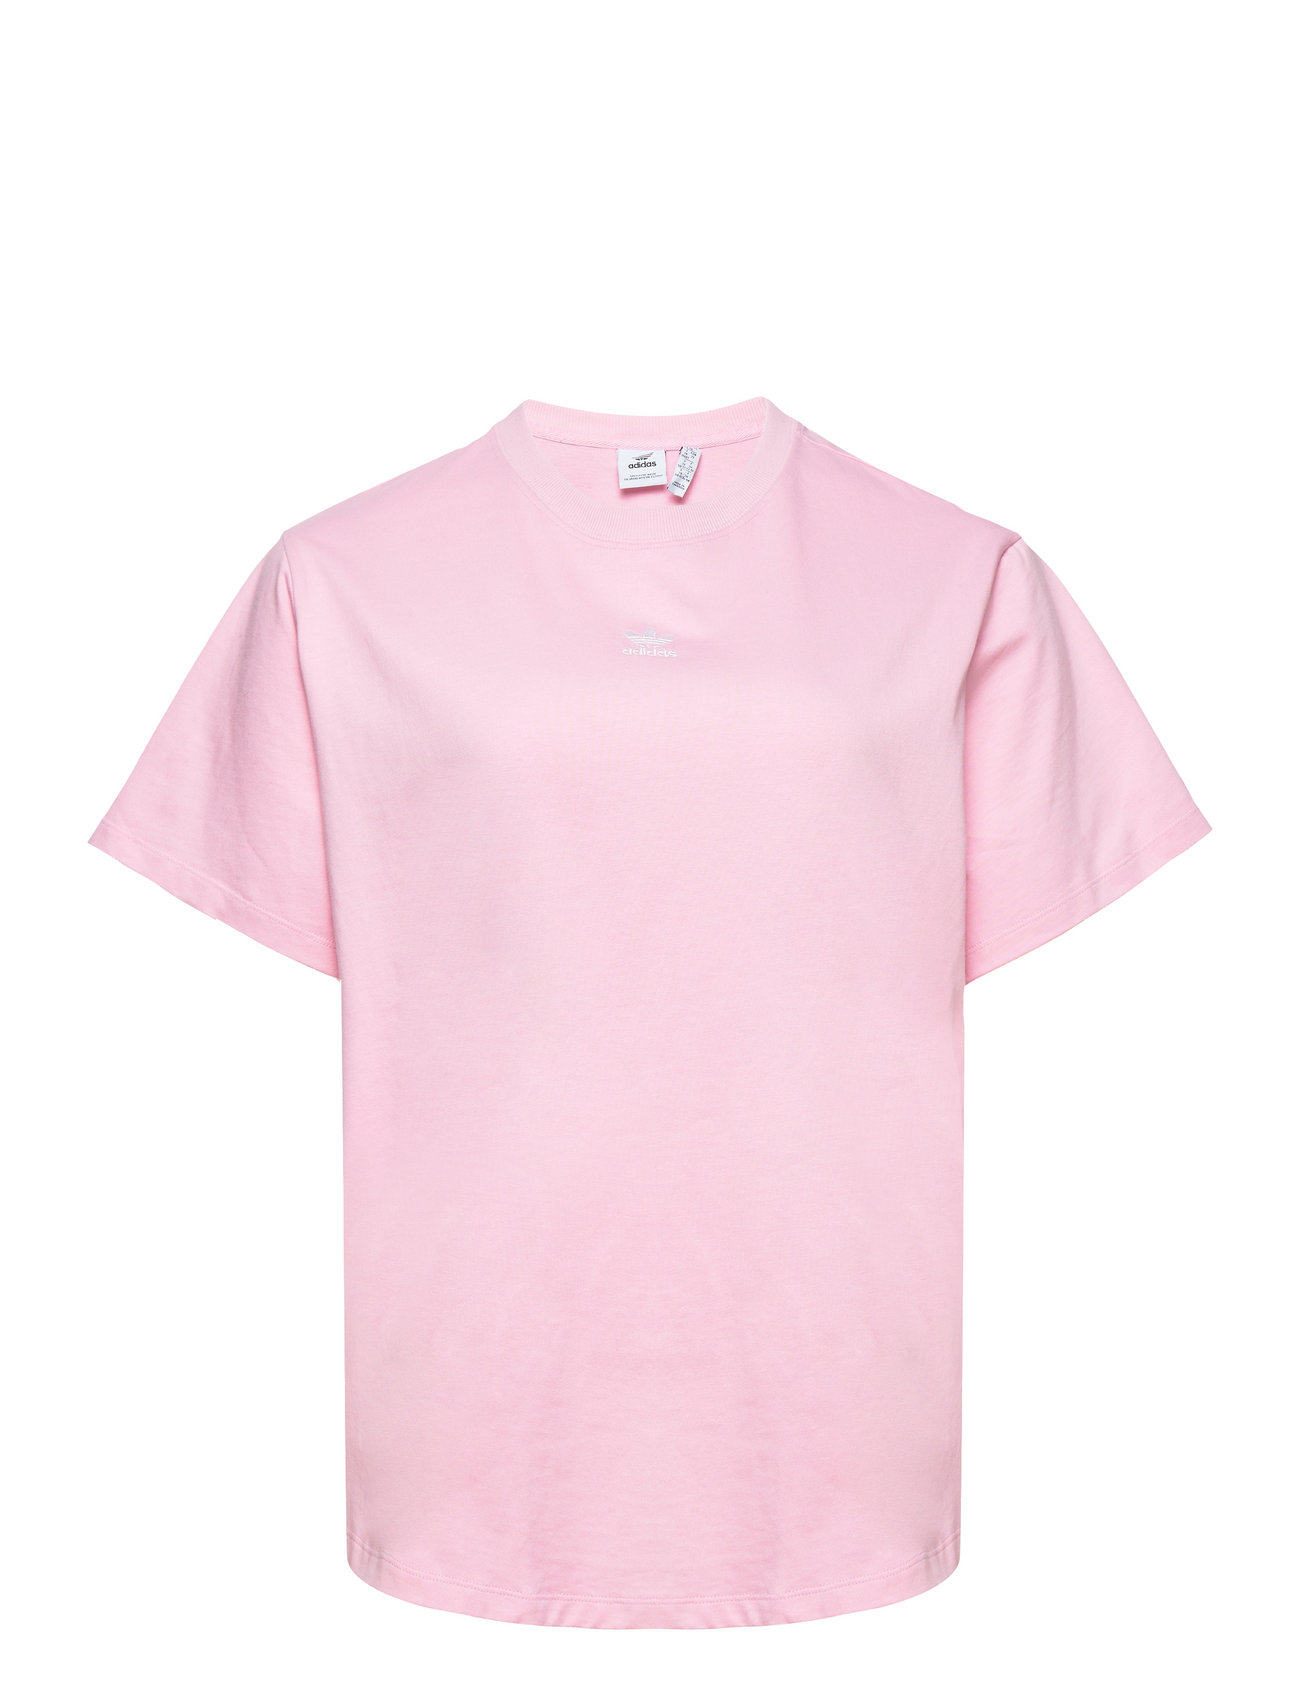 Regular Tshirt Sport T-shirts & Tops Short-sleeved Pink Adidas Originals